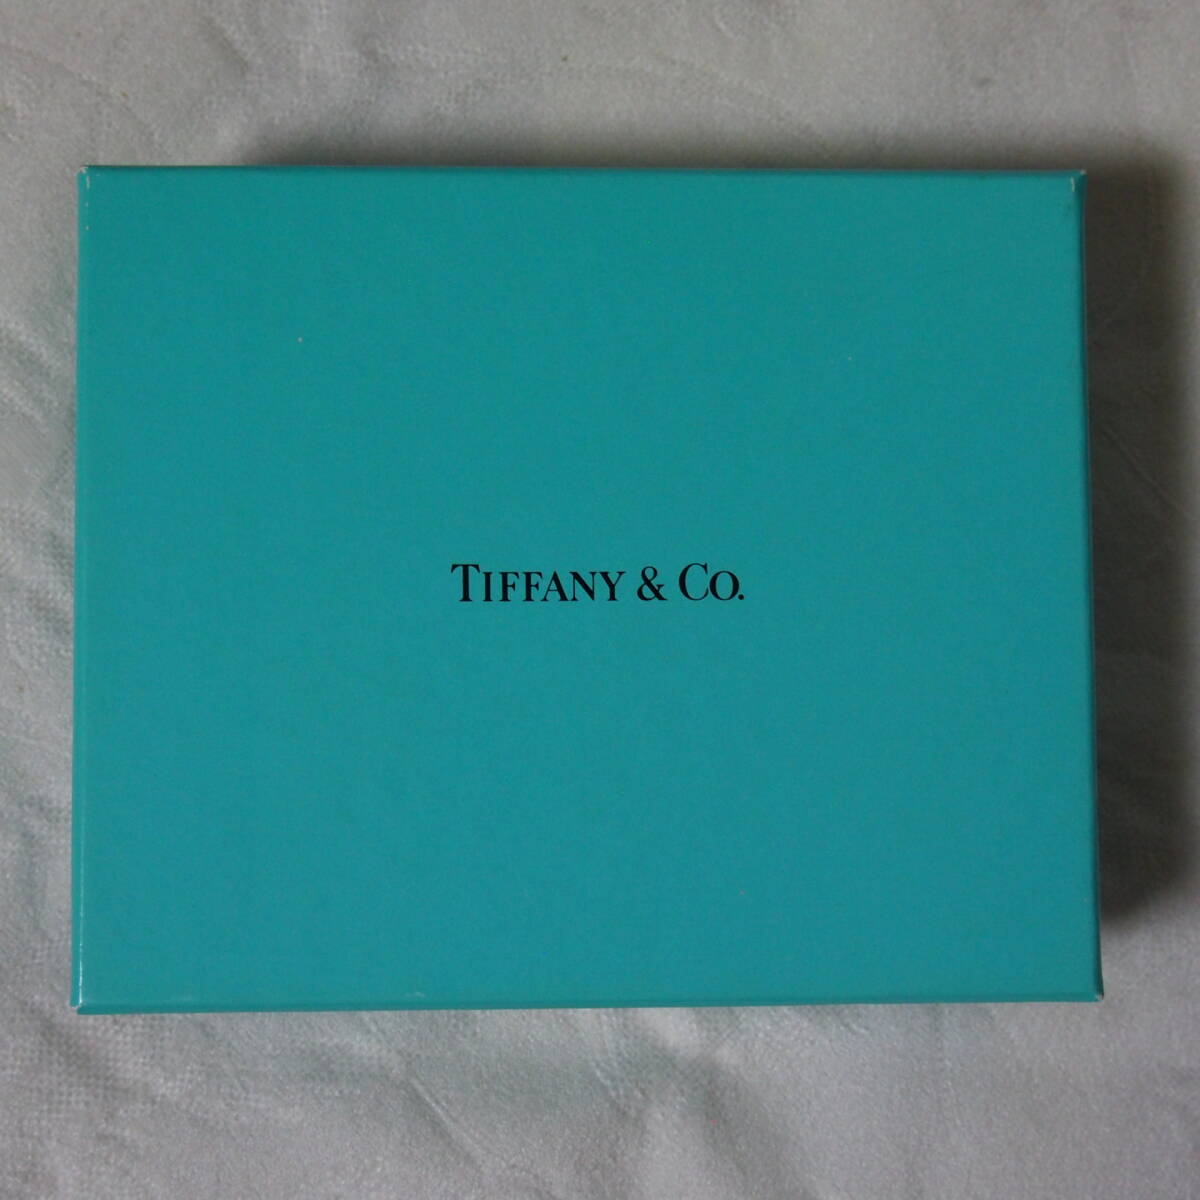 ハイセンス・天然原石 アート !! 「AAA 級 雪花オブシディアン原石」&「Tiffany ケース & 収納袋」 セット品　 ( 管理番号 3 )_Tiffany のケースです